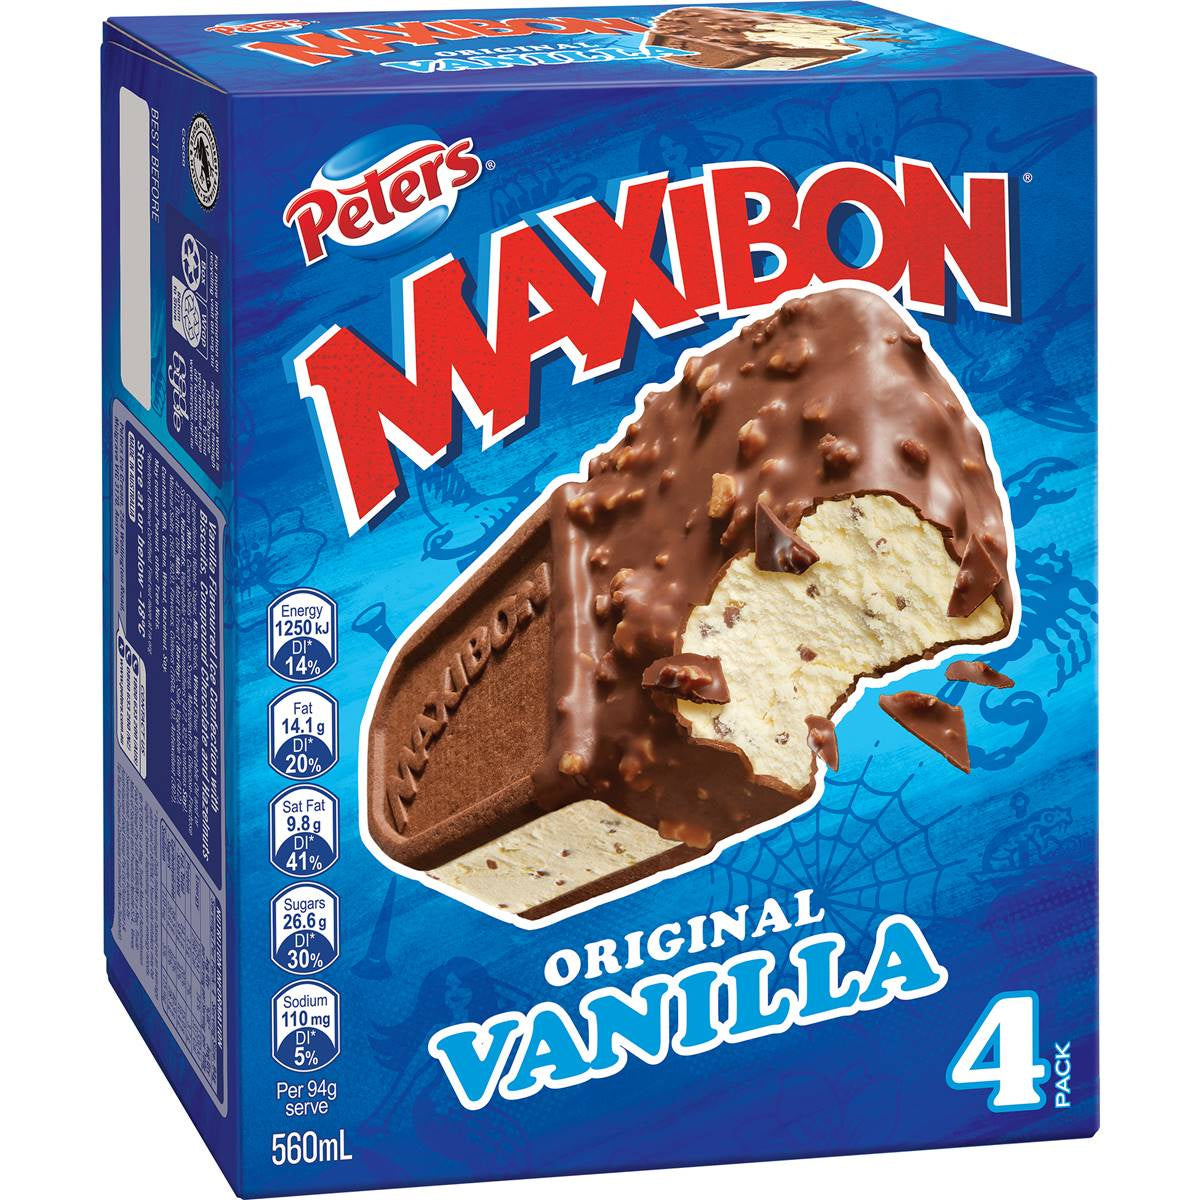 Peter's Maxibon Vanilla 4pk